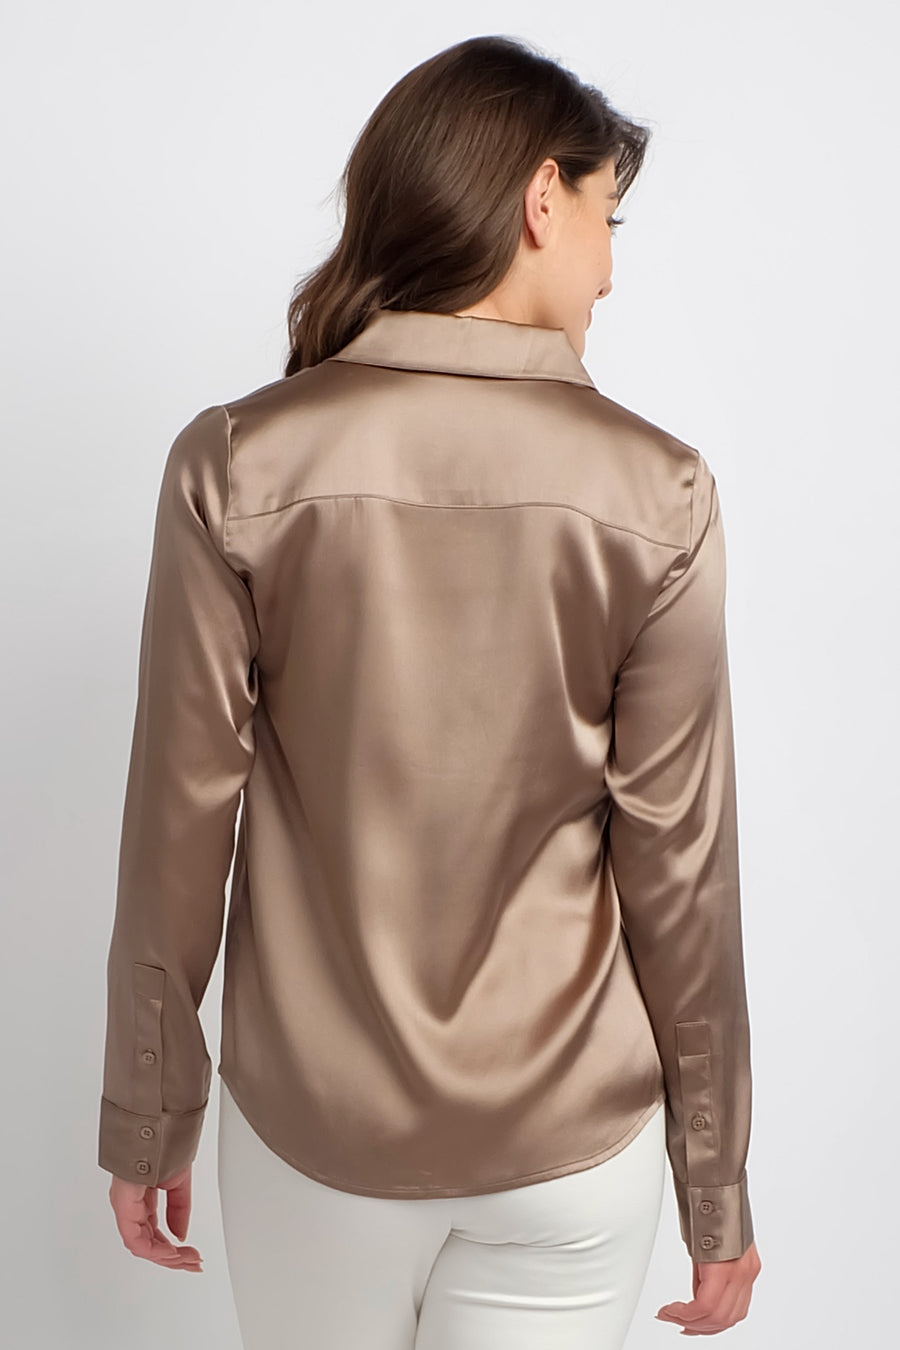 women's copper silk long sleeve top